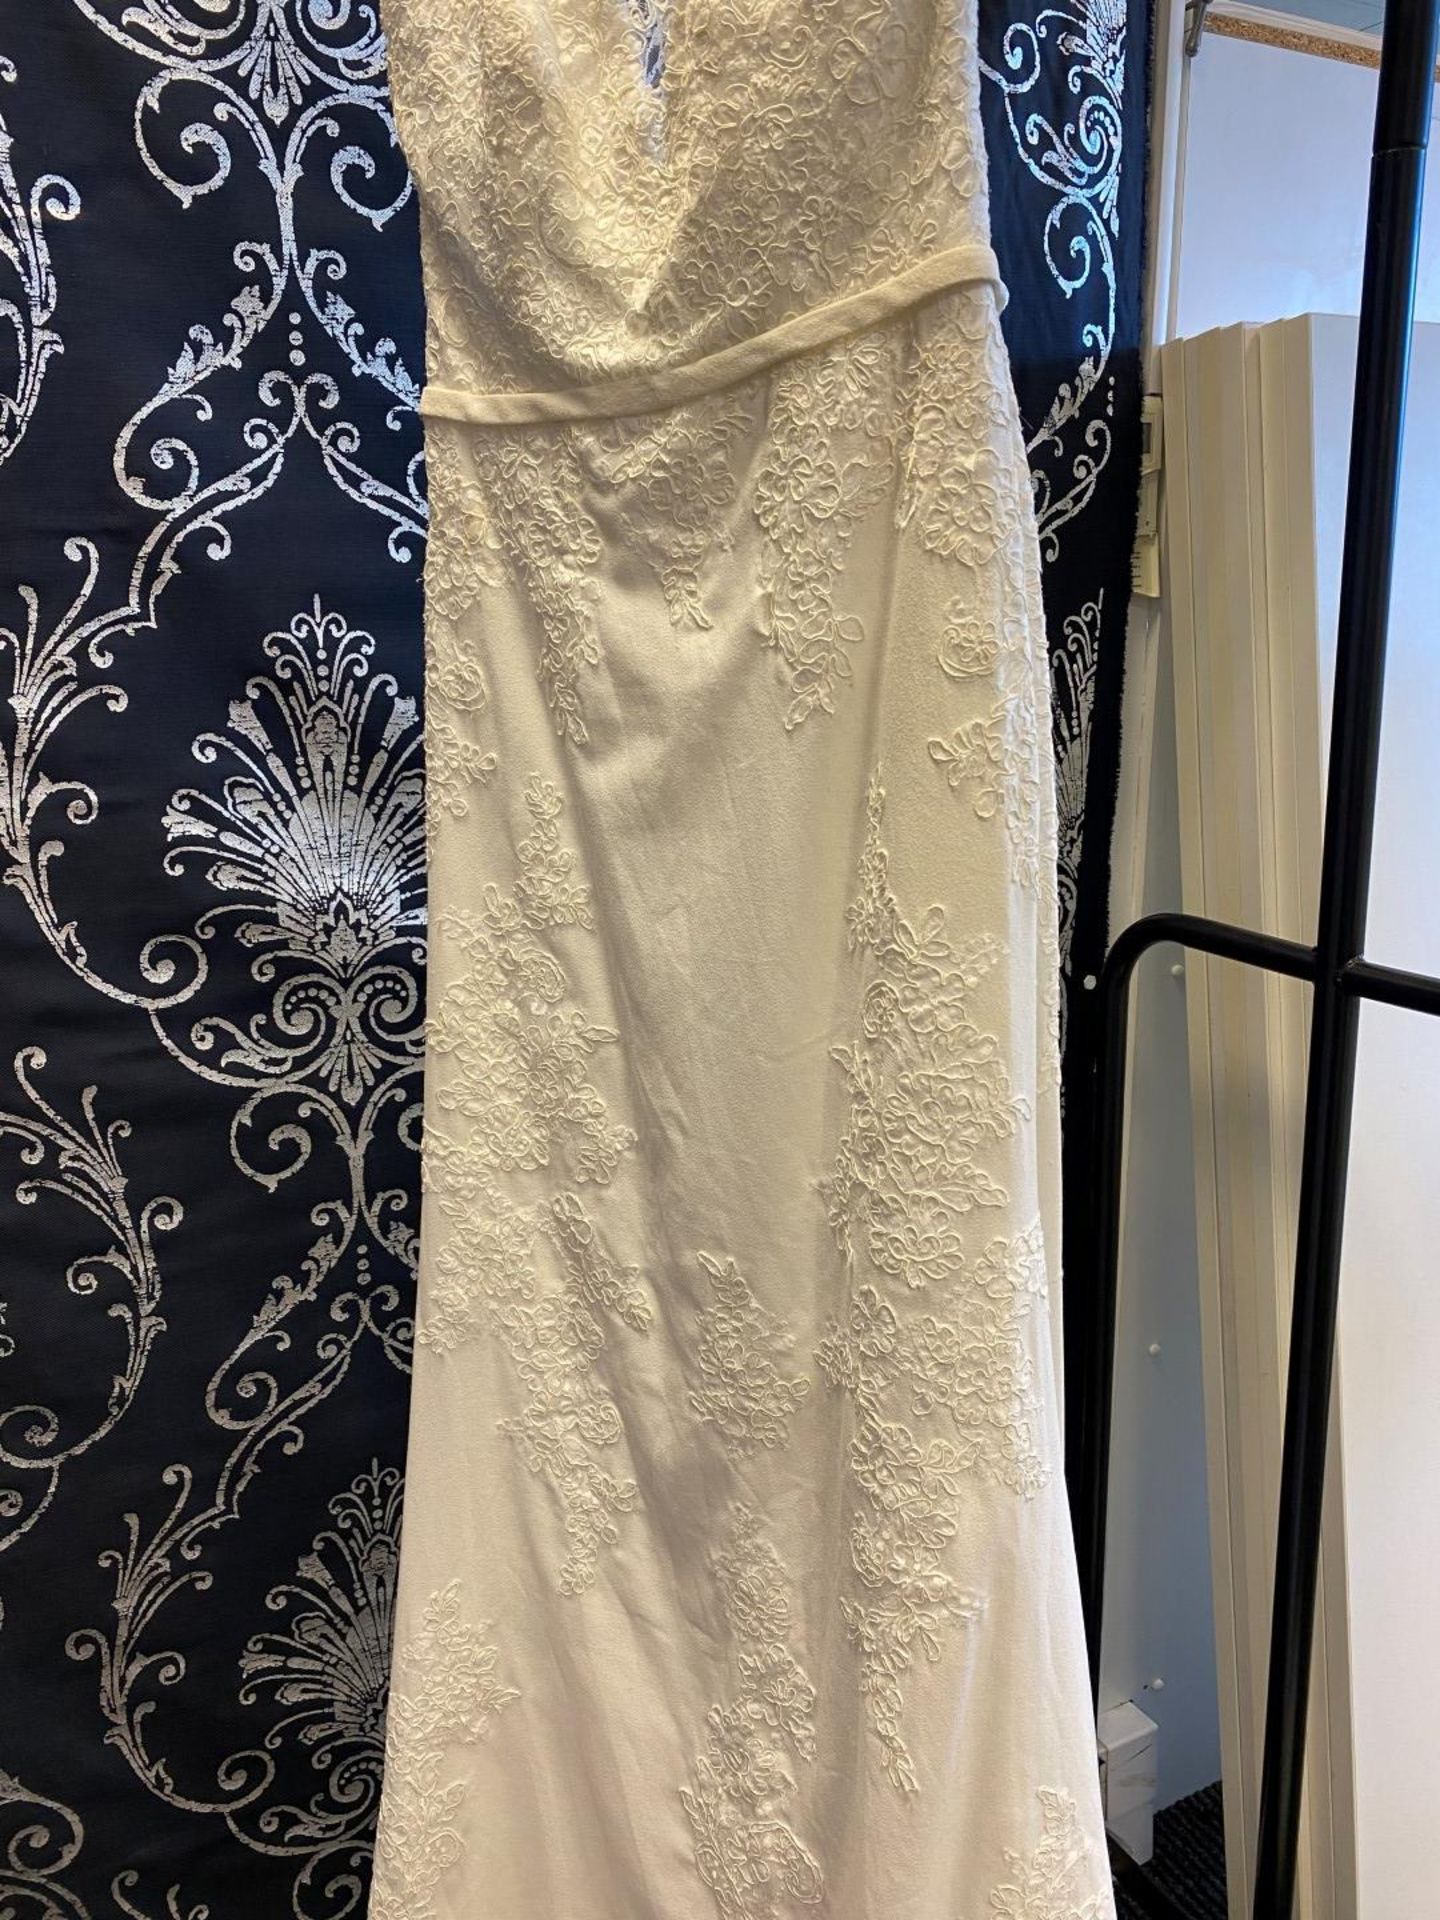 1 x MORI LEE Stunning Chiffon & Lace Biased Cut Designer Wedding Dress Bridal Gown RRP £1,500 UK 12 - Image 5 of 10